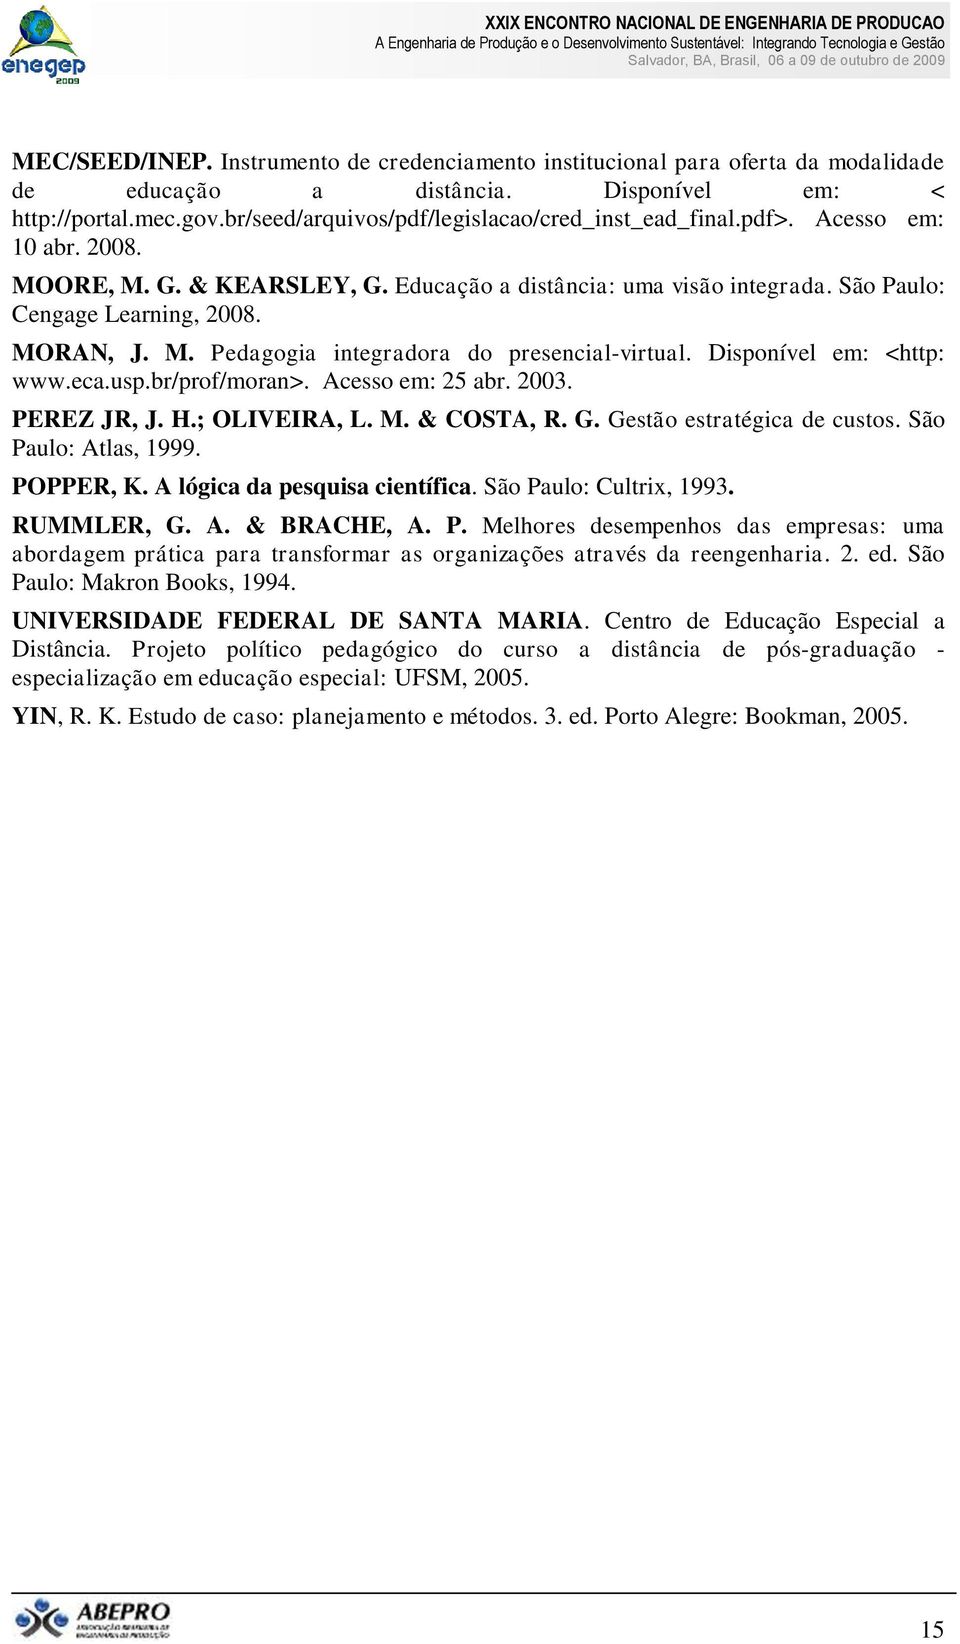 M. Pedagogia integradora do presencial-virtual. Disponível em: <http: www.eca.usp.br/prof/moran>. Acesso em: 25 abr. 2003. PEREZ JR, J. H.; OLIVEIRA, L. M. & COSTA, R. G. Gestão estratégica de custos.